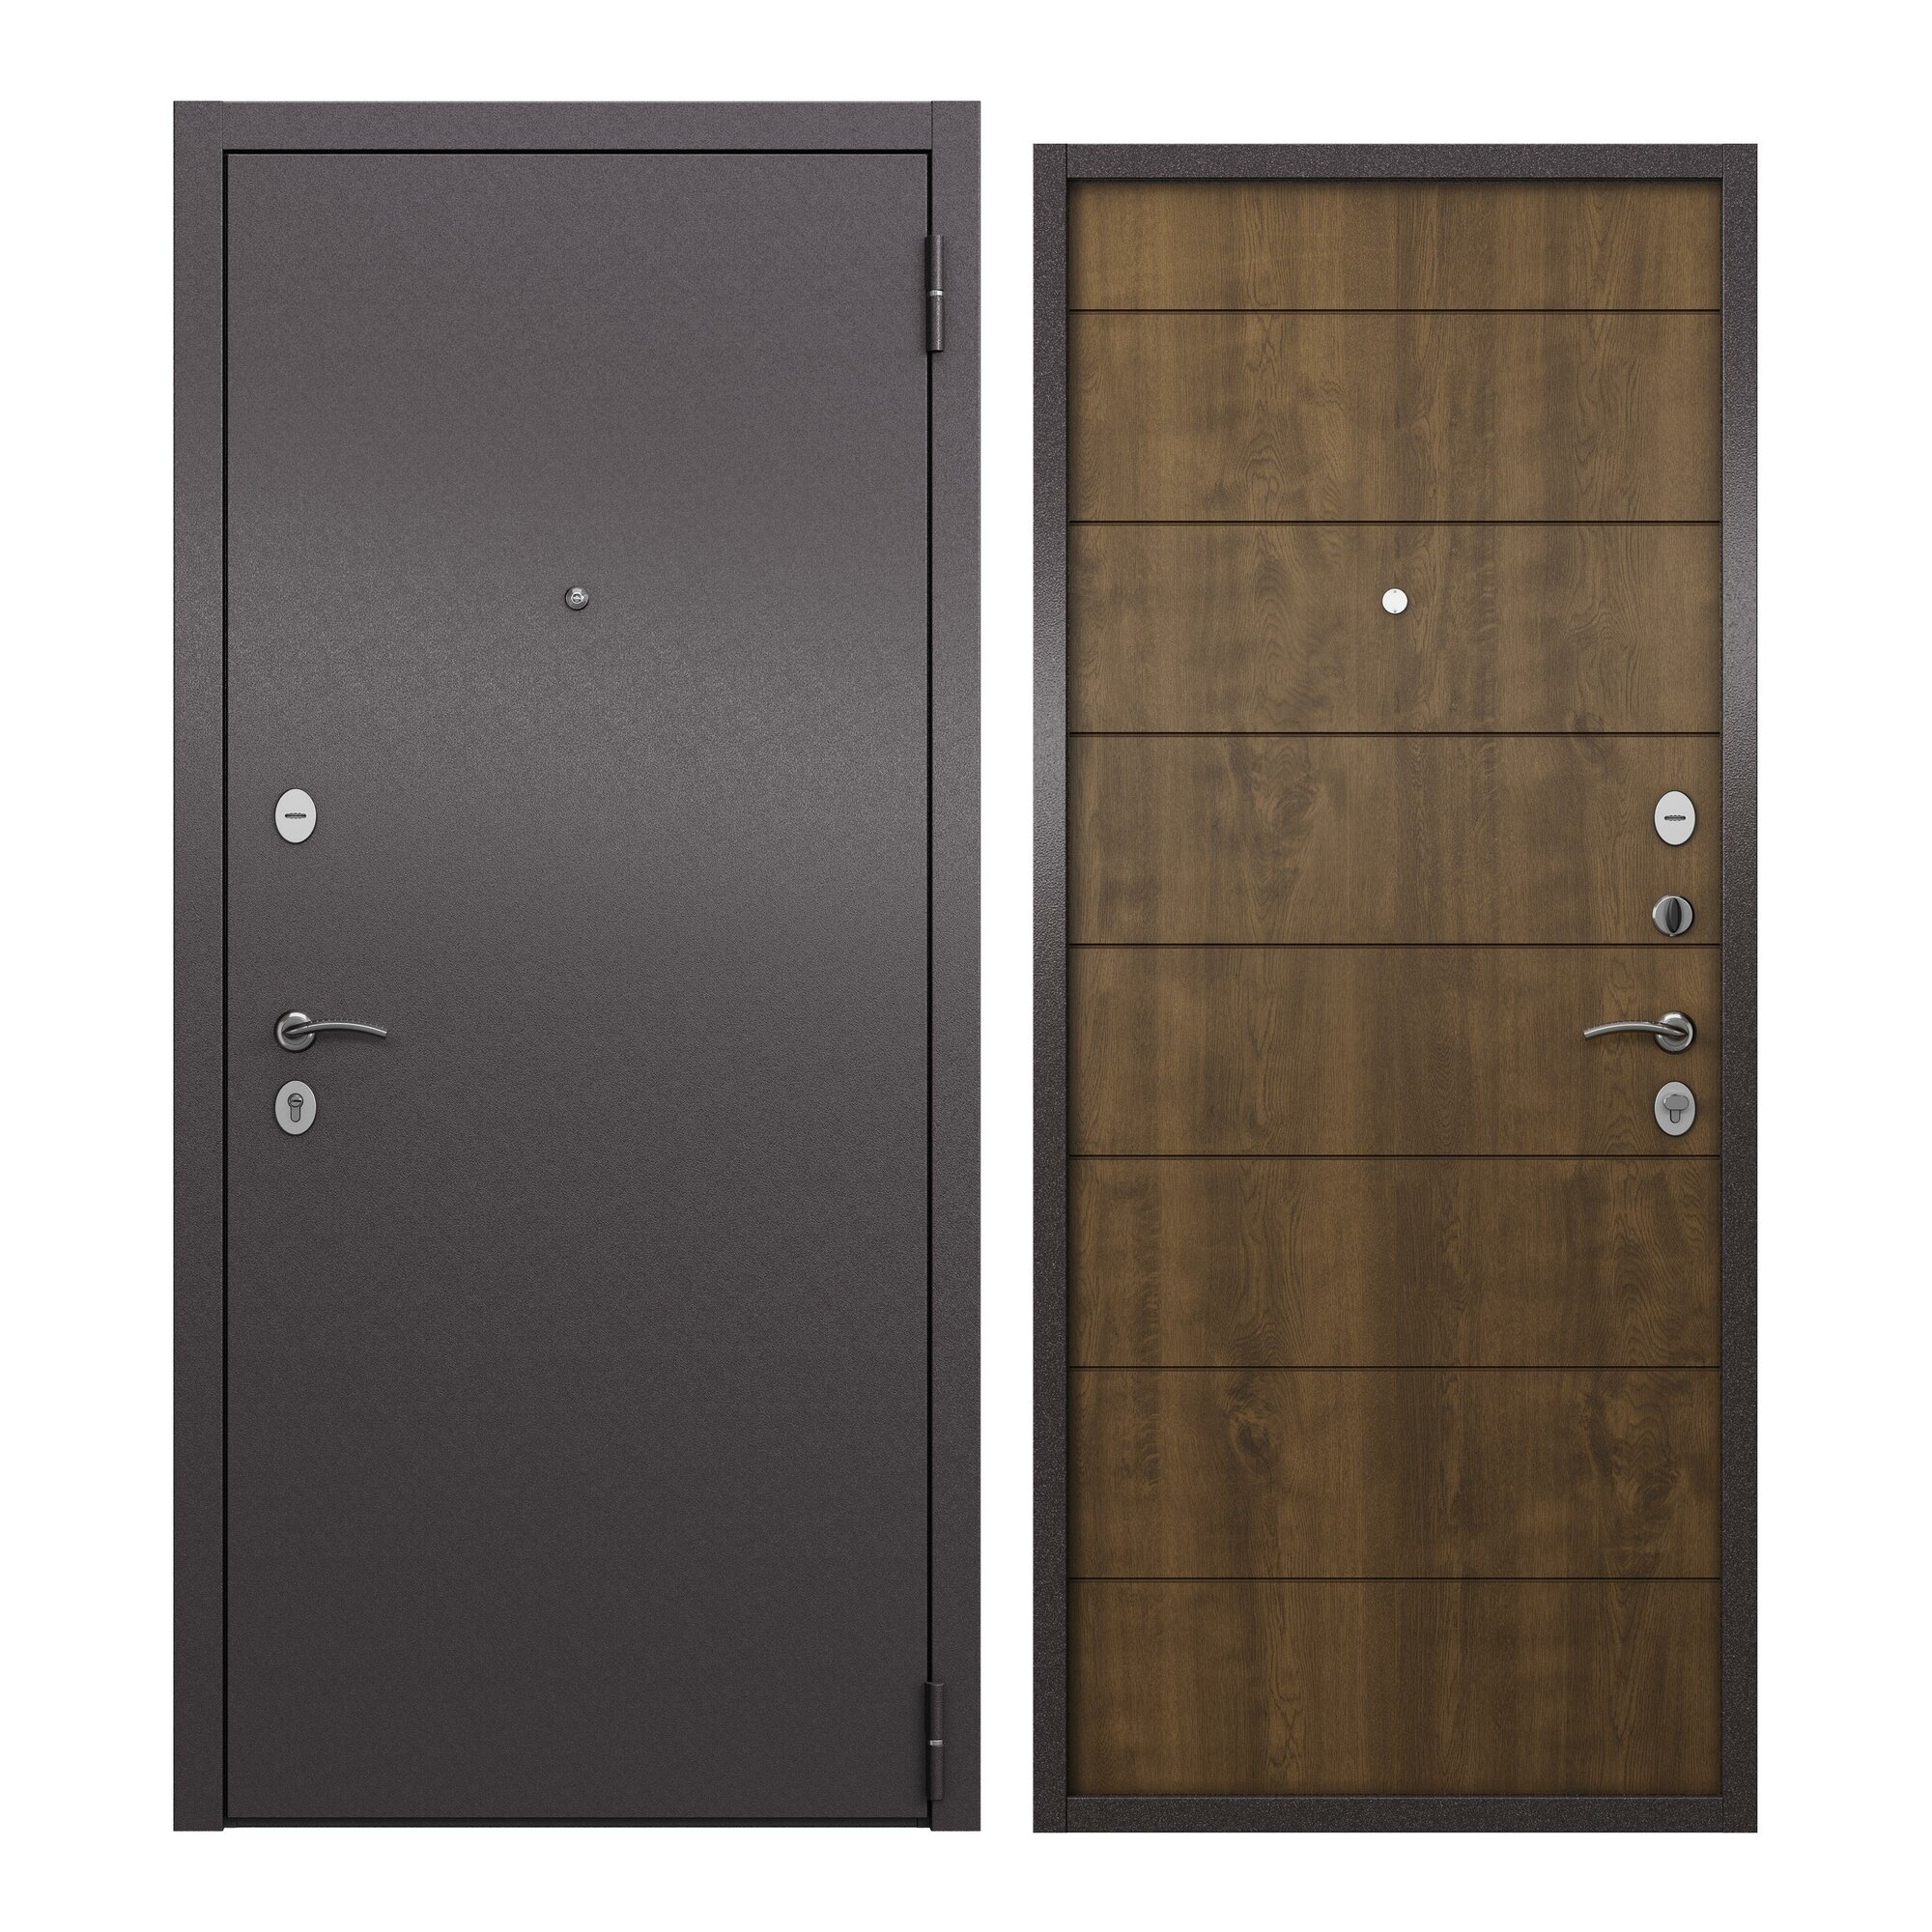 Дверь входная для квартиры ProLine металлическая Apartment 960х2050, правая, антивандальное покрытие два уплотнителя замки 4го и 2го класса, коричневый